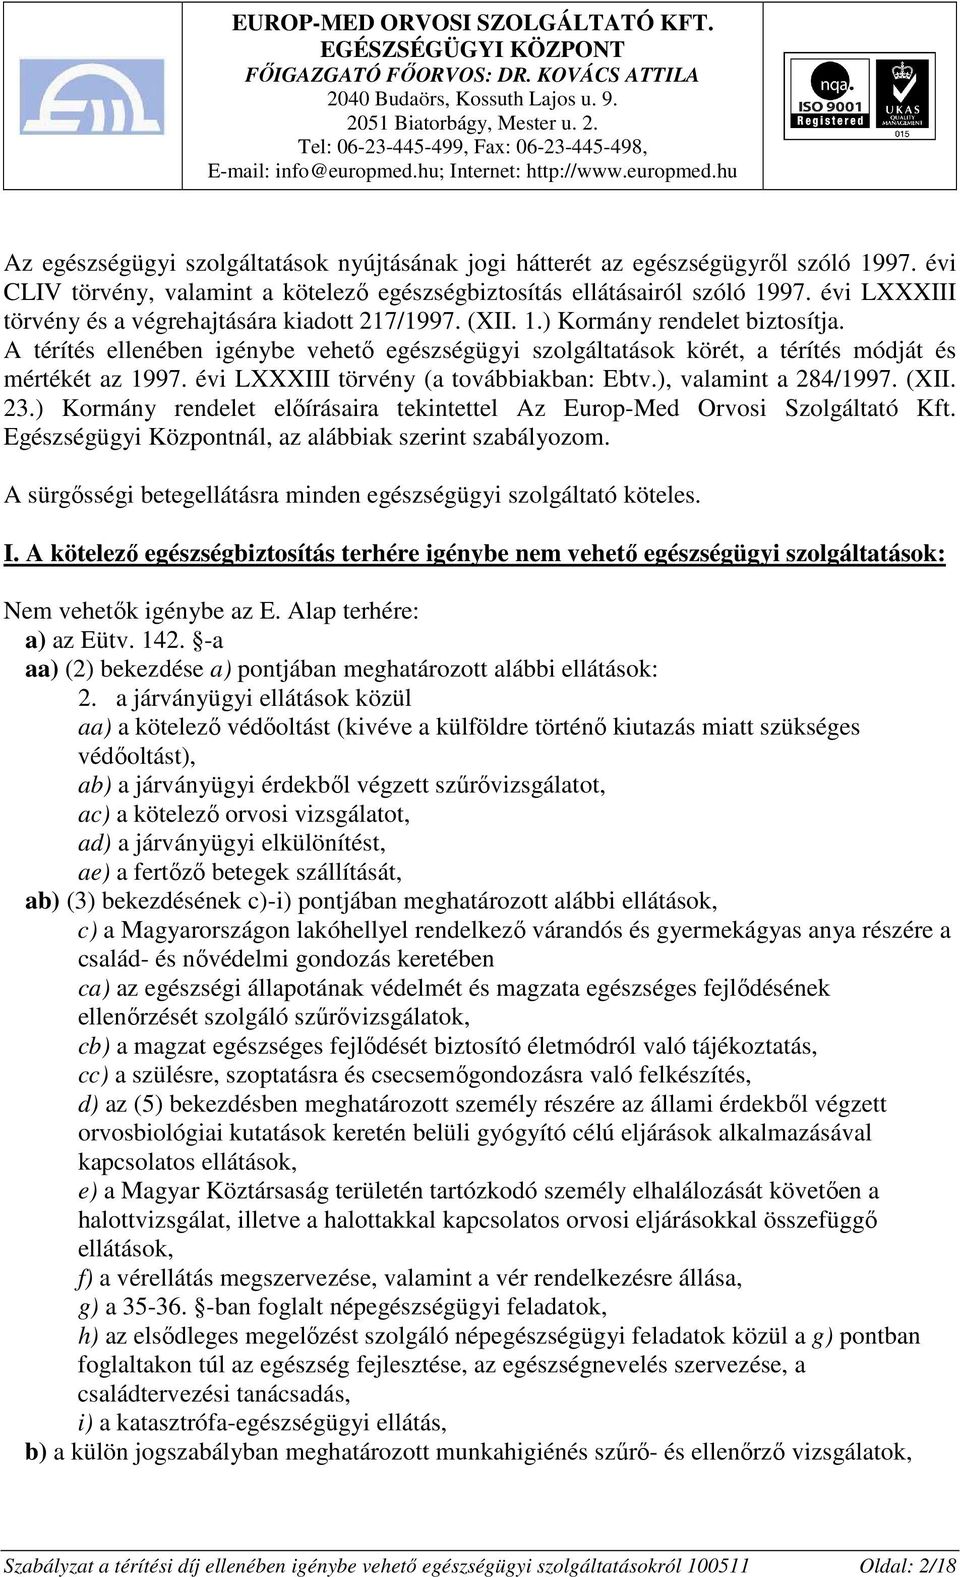 A térítés ellenében igénybe vehetı egészségügyi szolgáltatások körét, a térítés módját és mértékét az 1997. évi LXXXIII törvény (a továbbiakban: Ebtv.), valamint a 284/1997. (XII. 23.